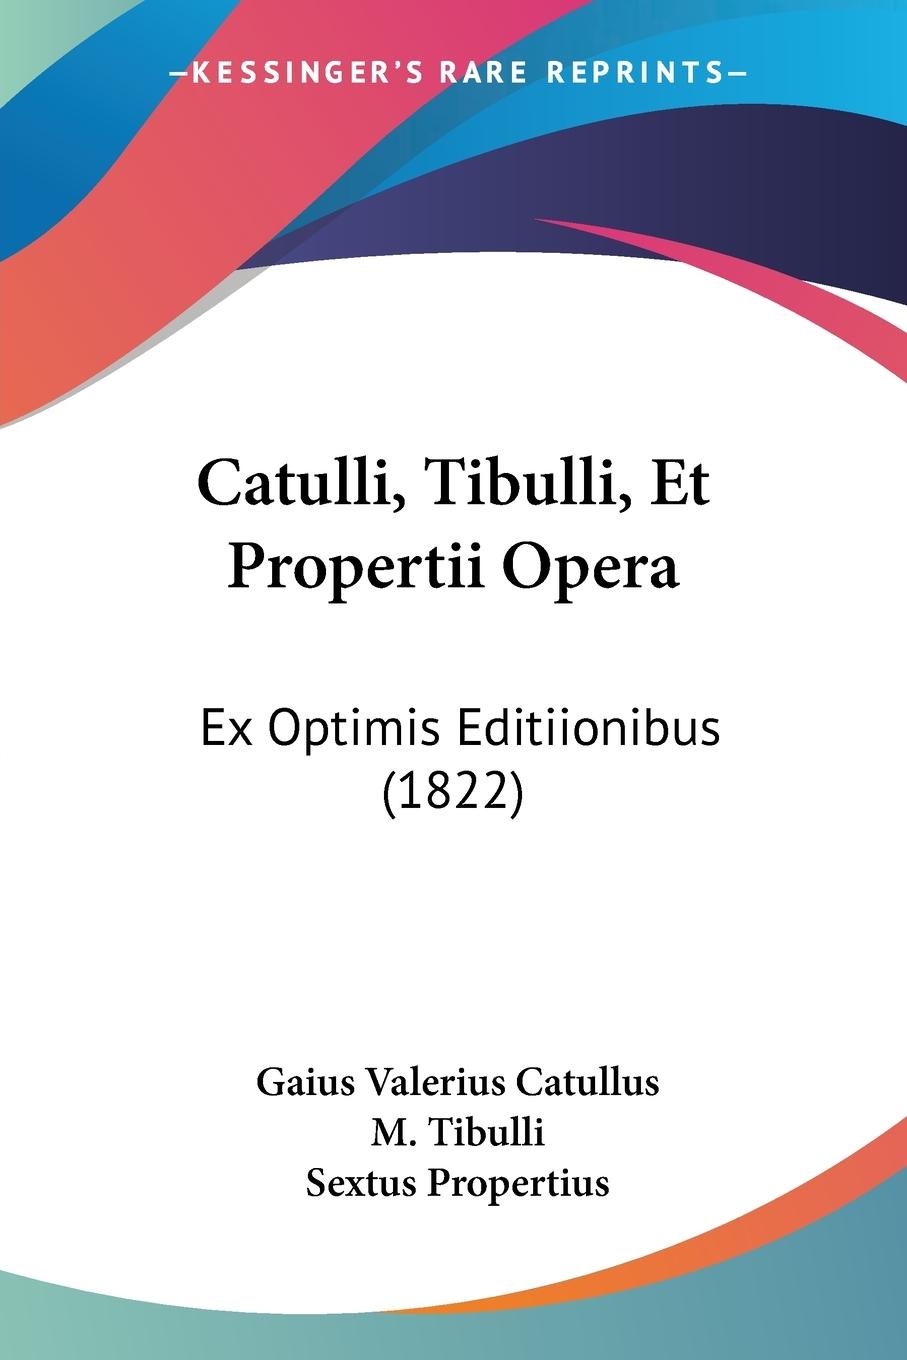 Catulli, Tibulli, Et Propertii Opera - Catullus, Gaius Valerius Tibulli, M. Propertius, Sextus